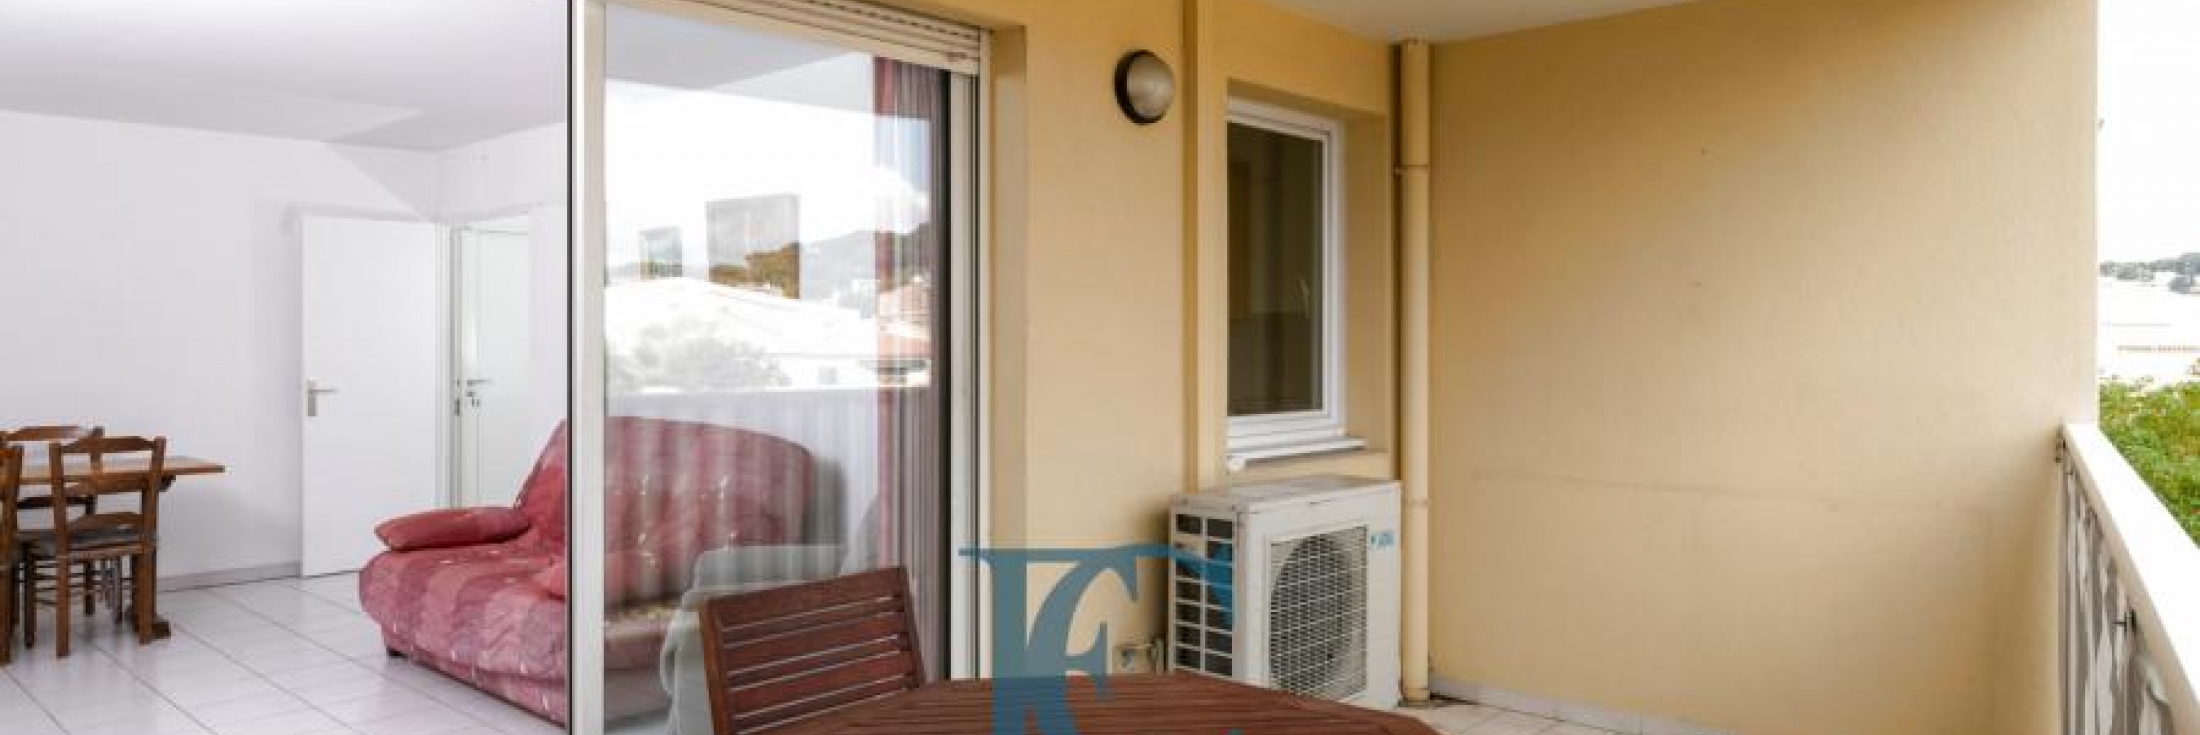 Appartement T2 avec terrasse et garage à vendre dans le centre-ville de Sanary-sur-Mer